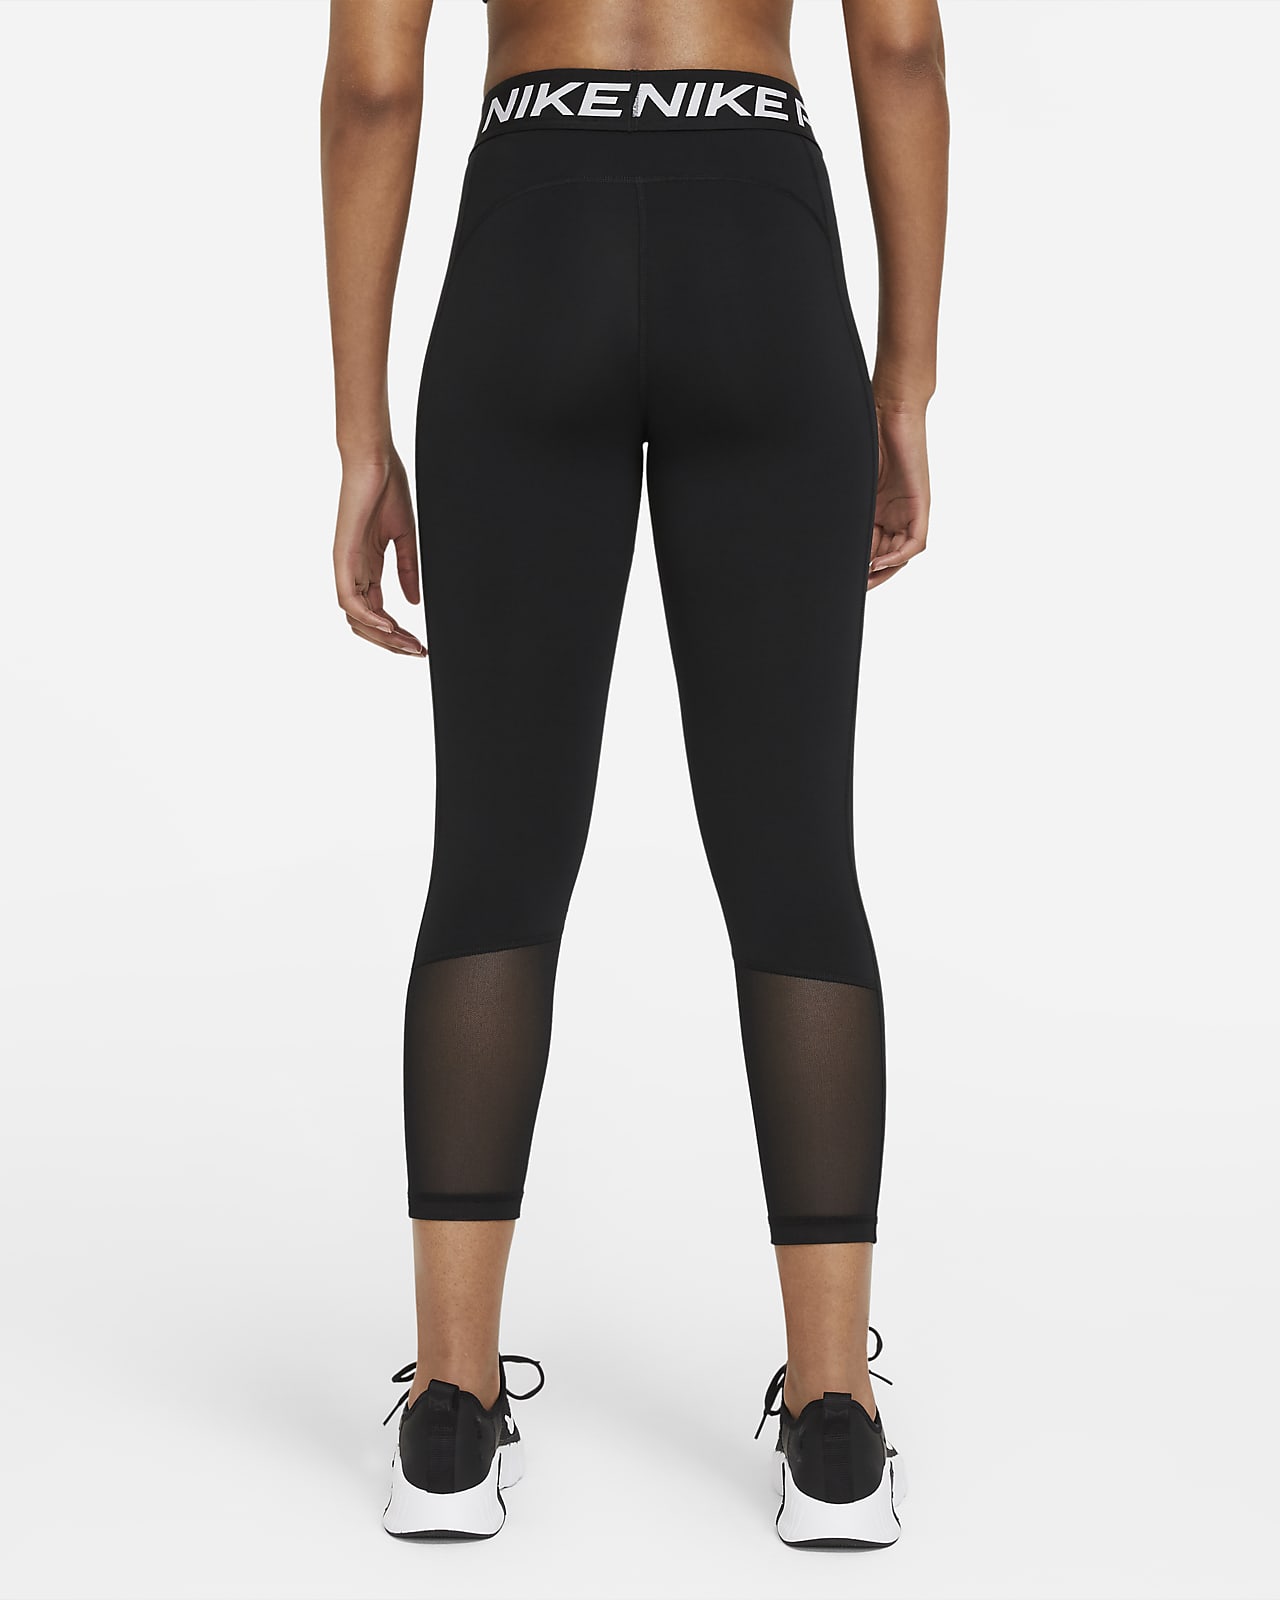 Nike Pro 365 Women's Cropped Leggings (Plus Size) DC5393-010 Size 3X